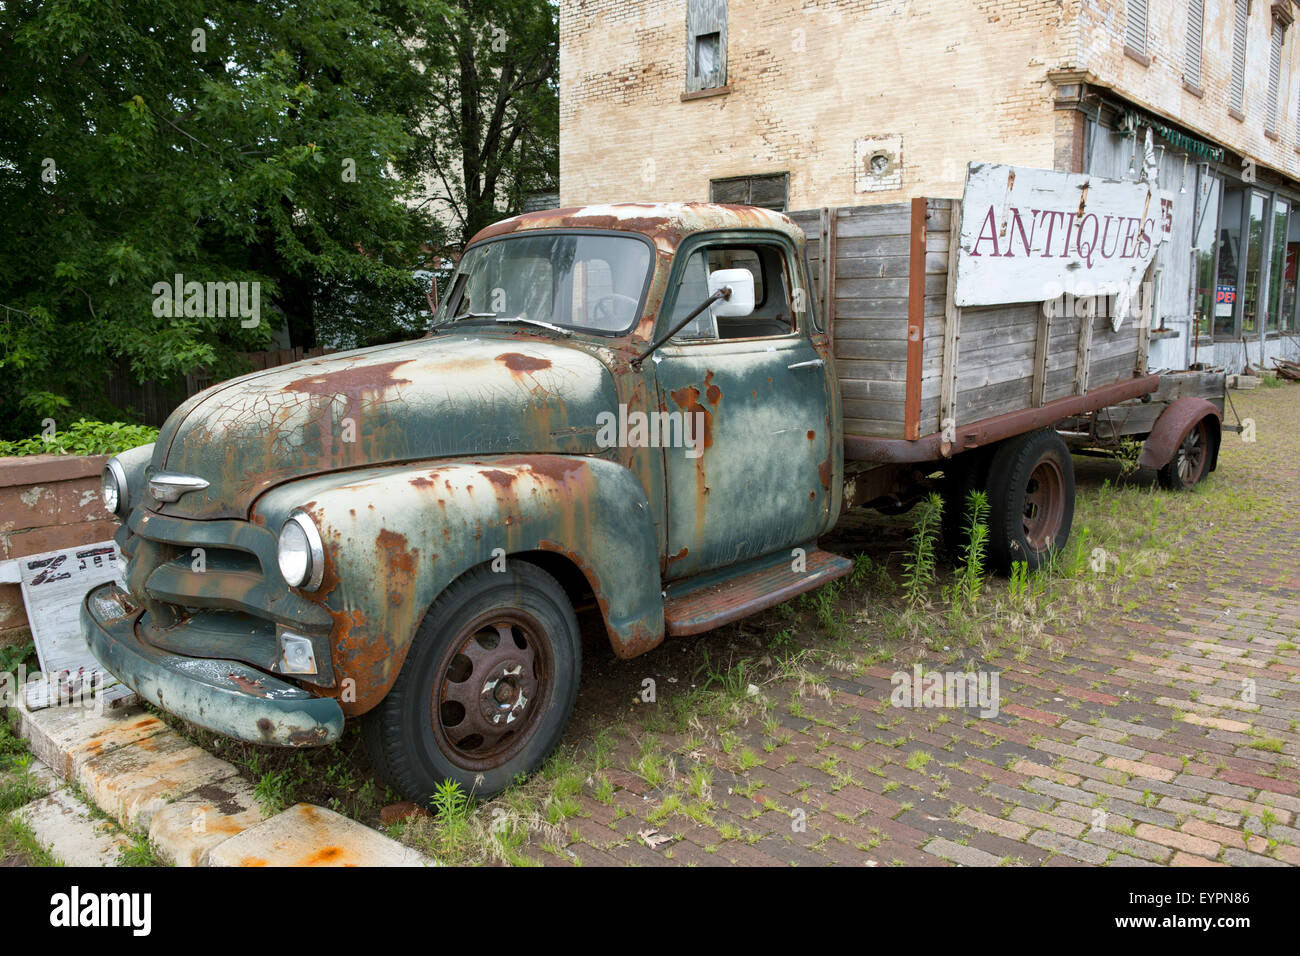 La parrilla delantera y el capó de un viejo camión Chevy oxidada Foto de stock